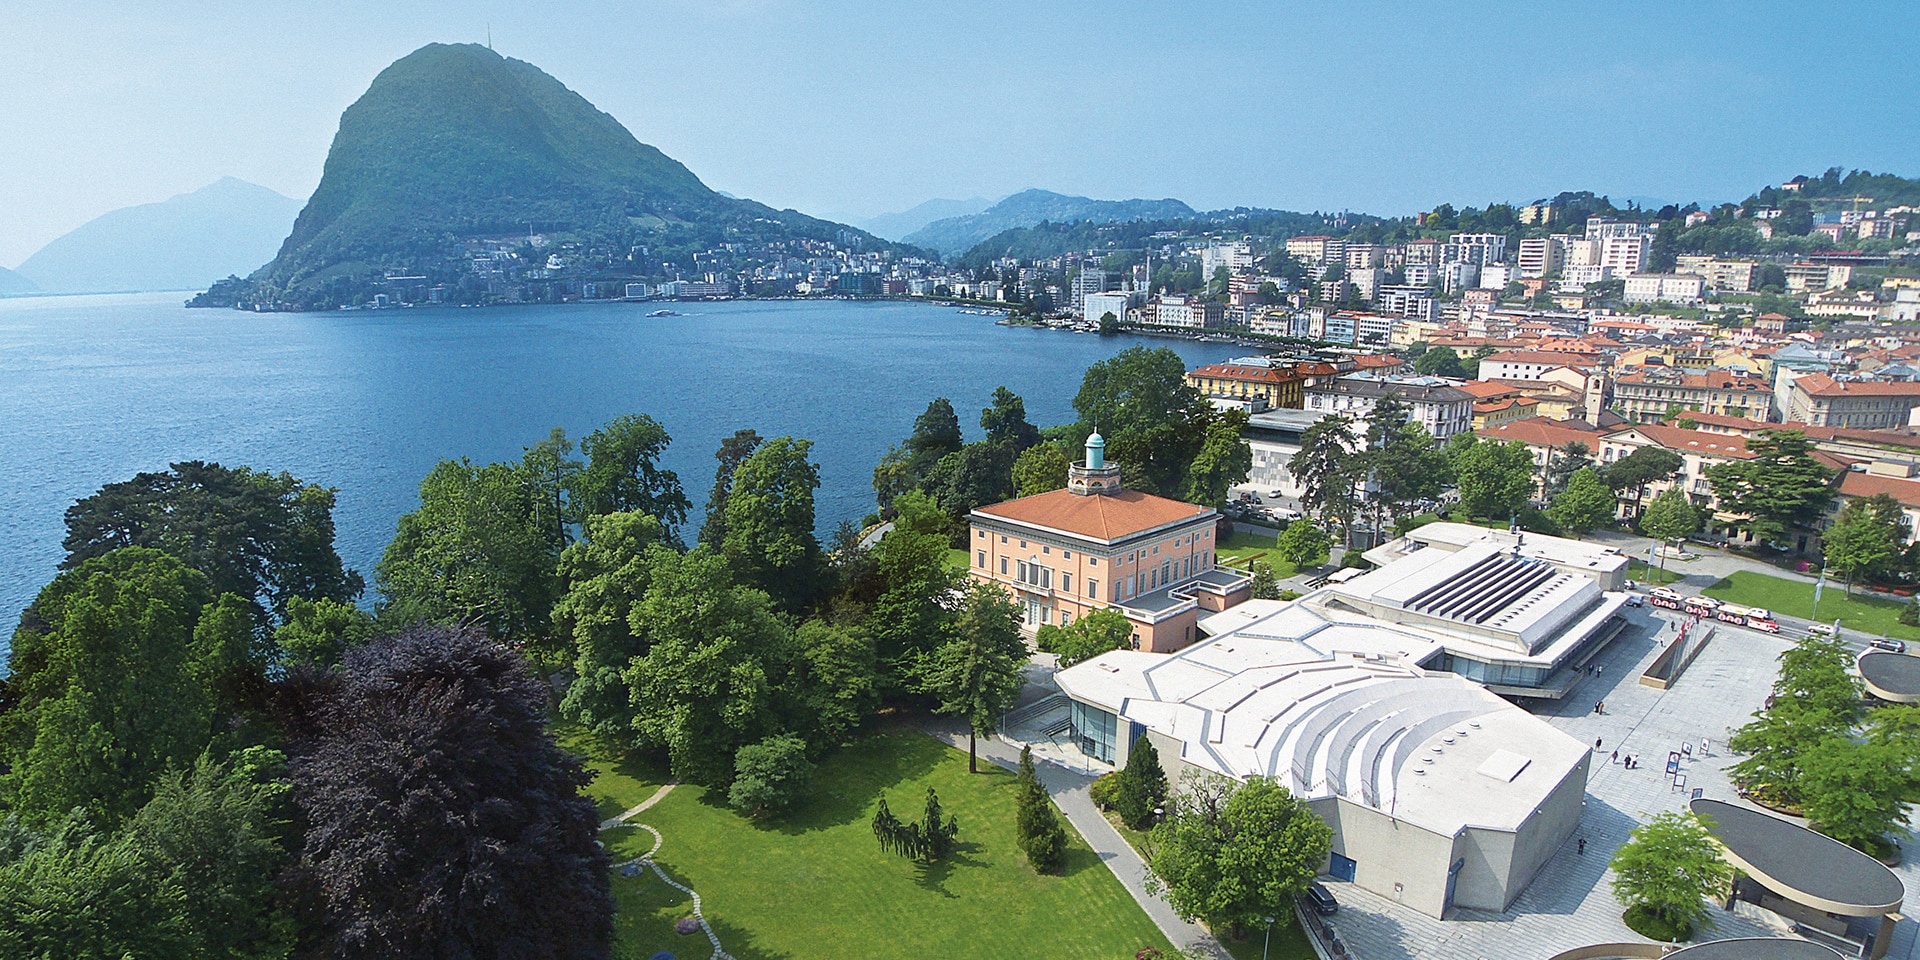  Das Gebäude des Palazzo dei Congressi in Lugano, in dem die URC2022 stattfinden wird.